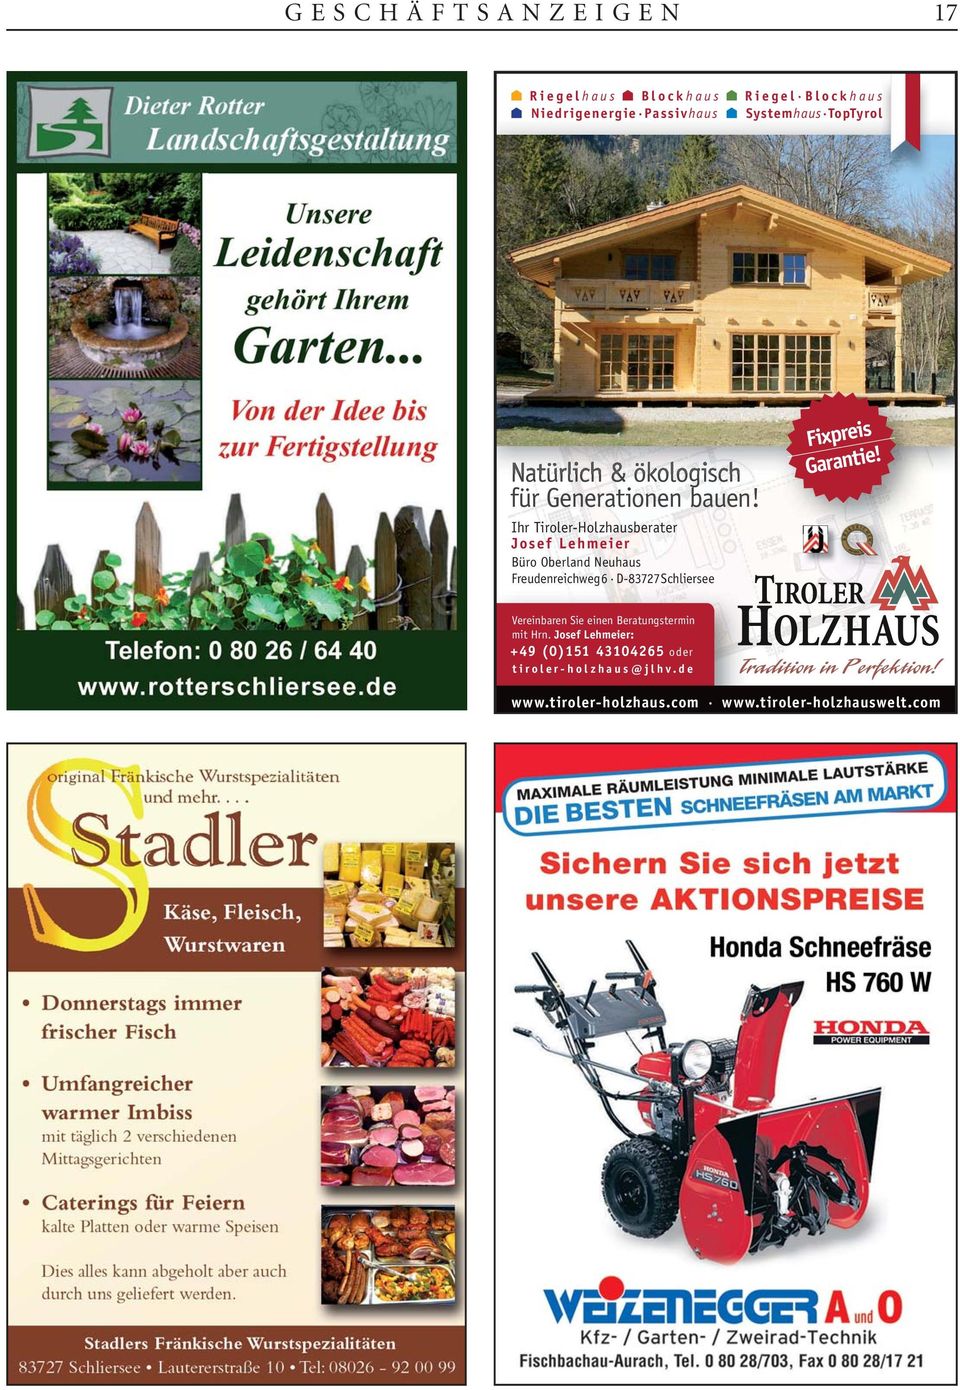 Ihr Tiroler-Holzhausberater Josef Lehmeier Büro Oberland Neuhaus Freudenreichweg 6 D-83727 Schliersee Fixpreis